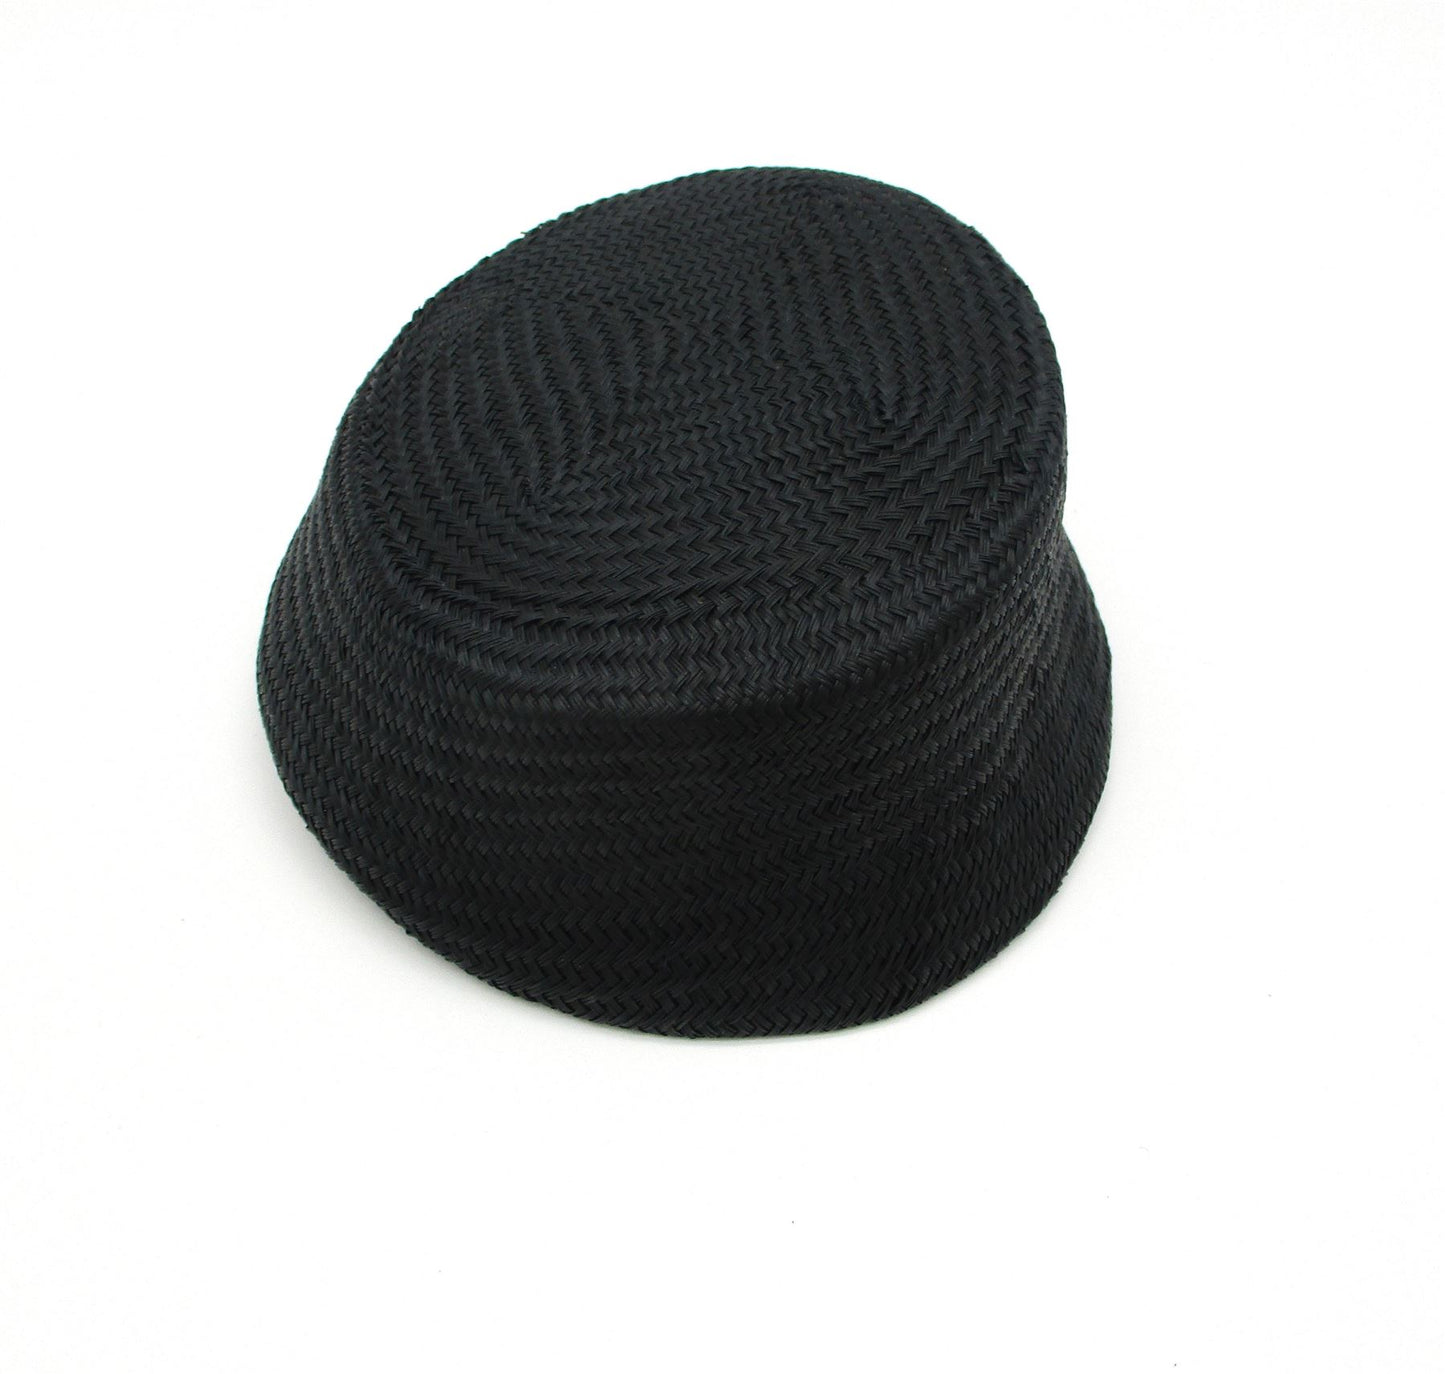 Buntal Straw Slanted Hat Base 17x19cm HA060